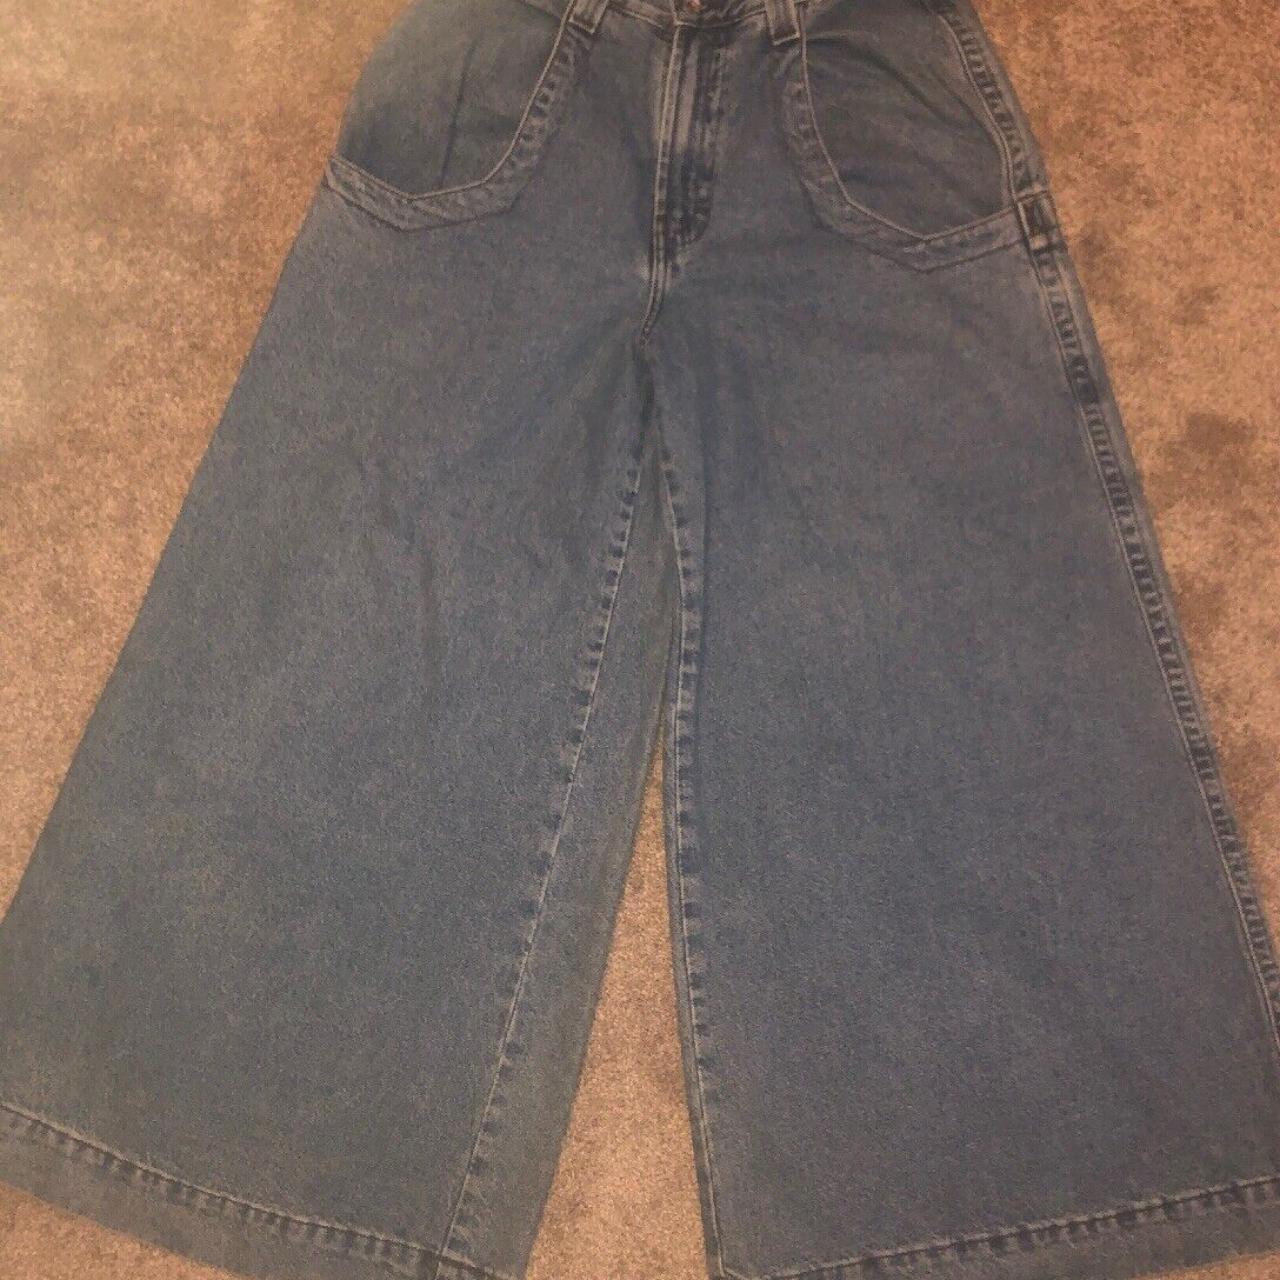 Vintage JNCO MAMMOTH HUGE Deep Pocket Blue Jeans 40... - Depop